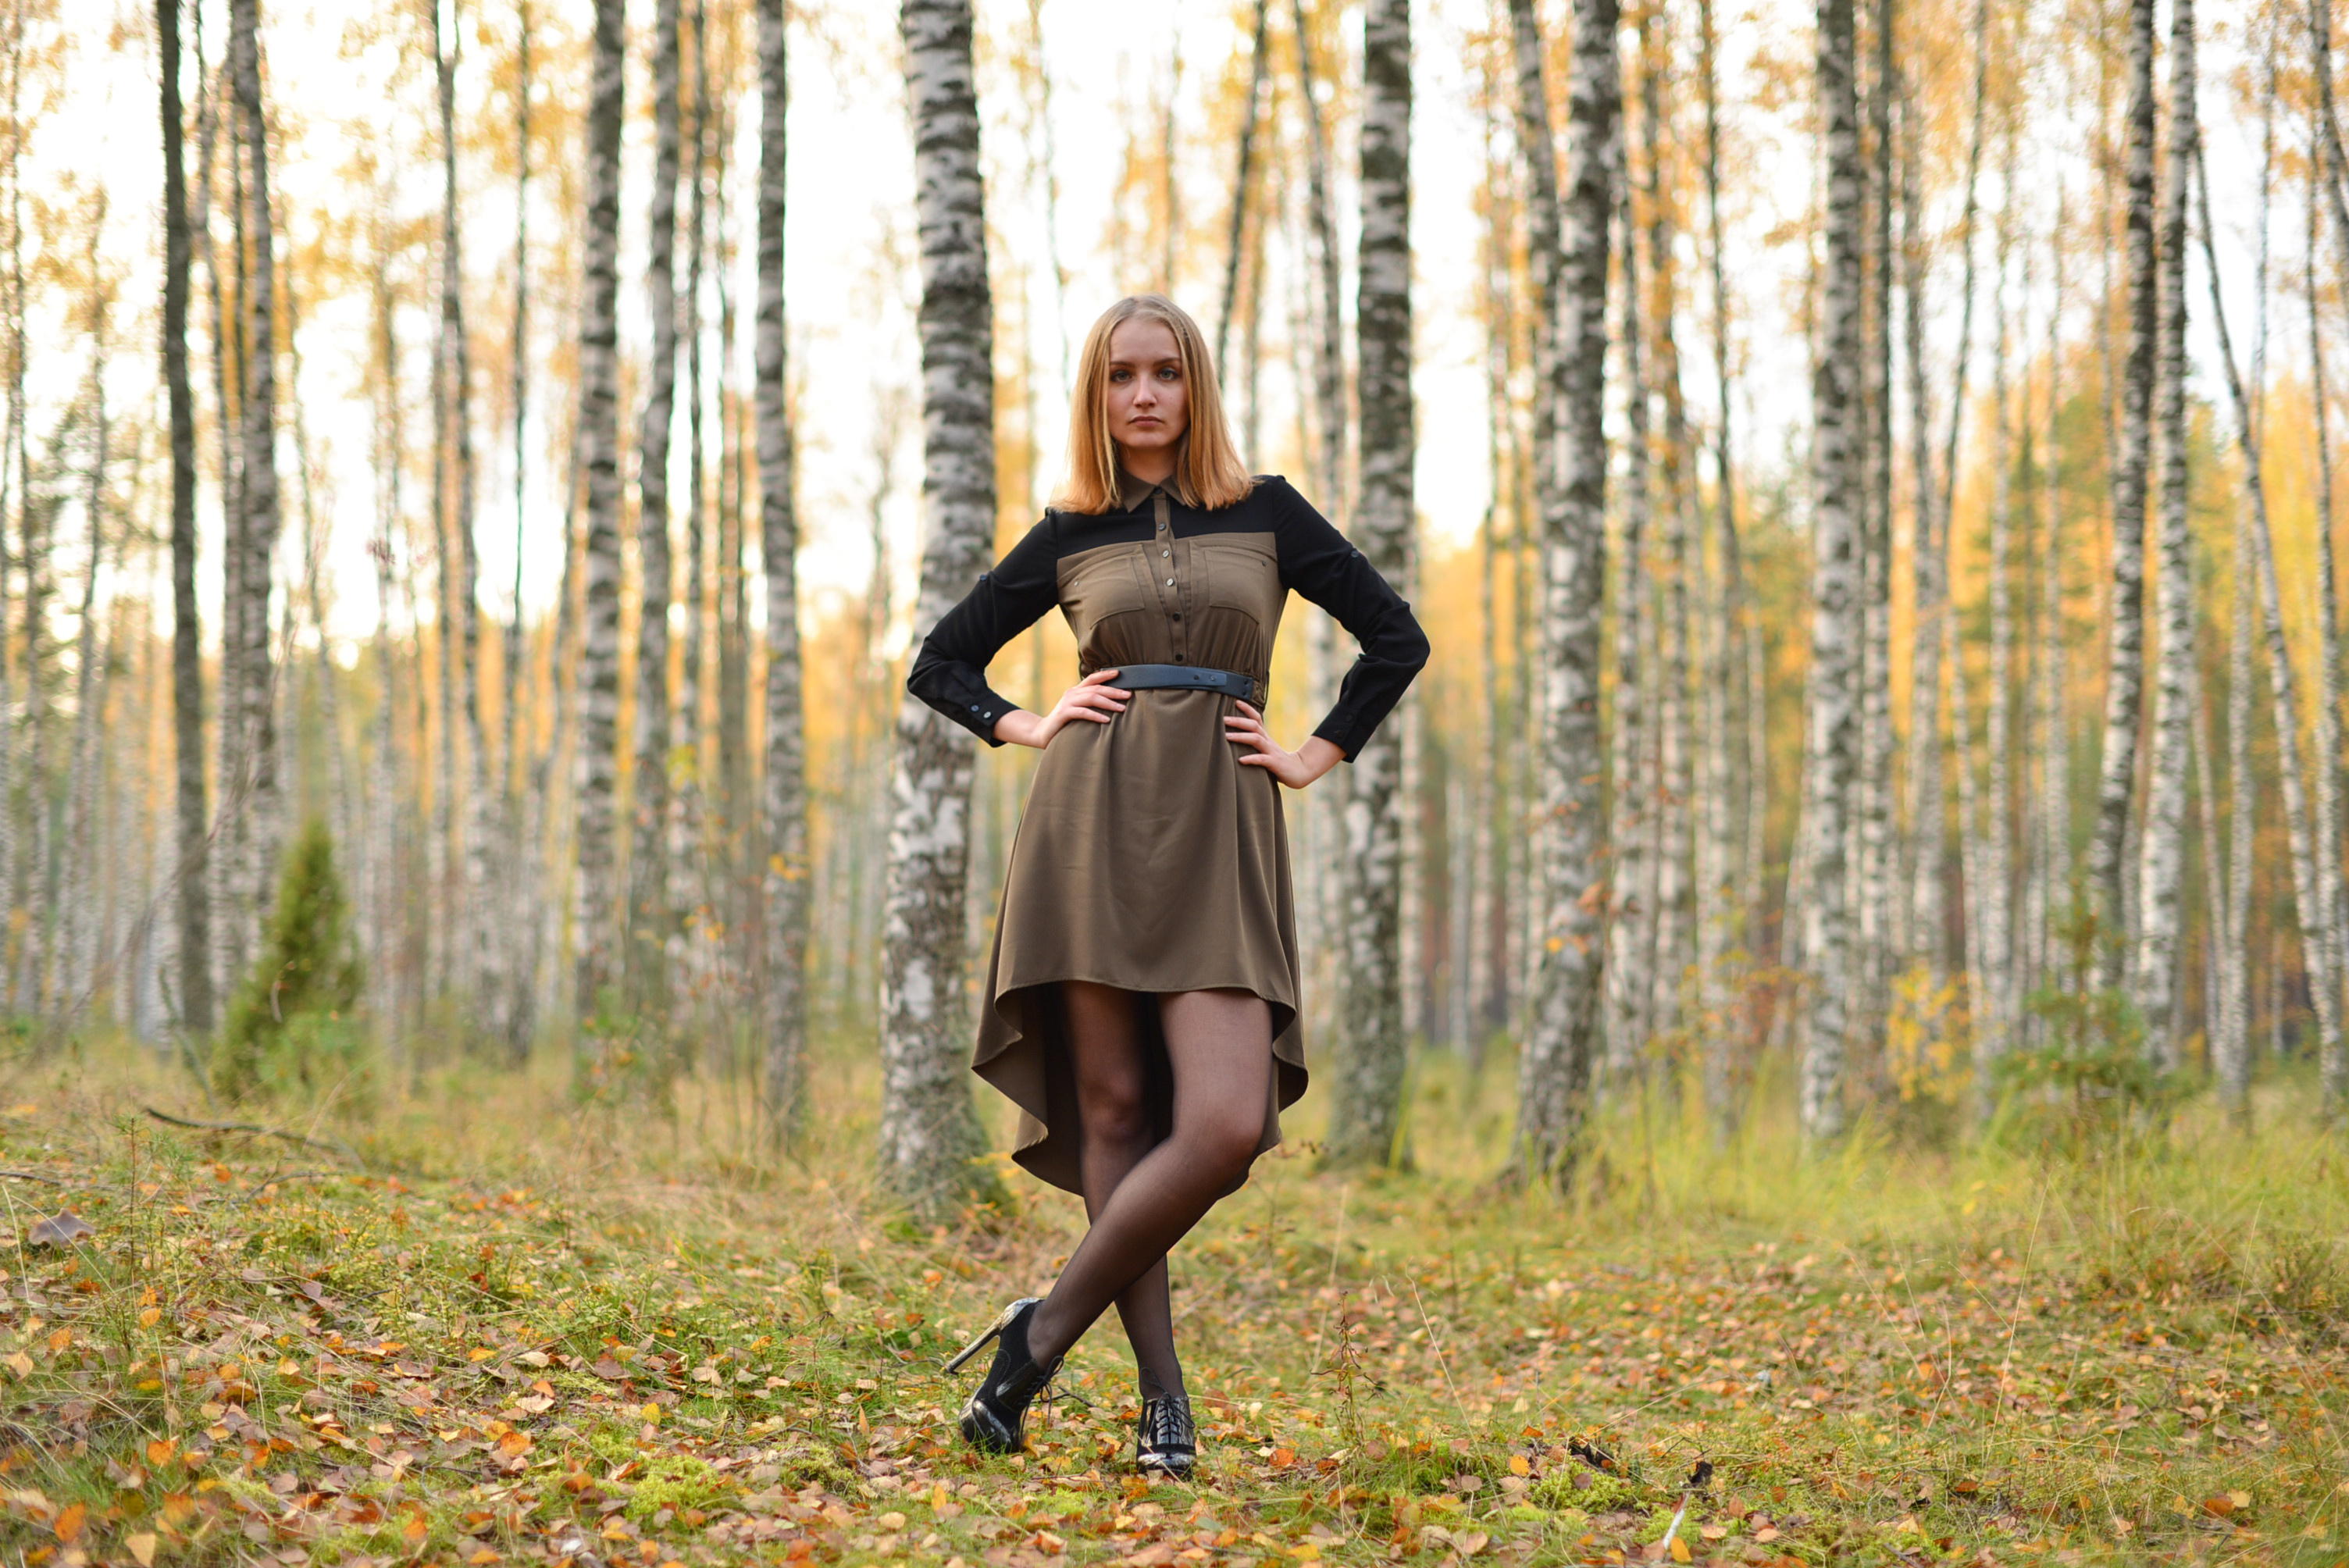 Полненькую в лесу. Фотосессия в лесу. Осенние платья. Фотосессия в лесу в платье. Осенние фотосессии на природе девушки в платьях.